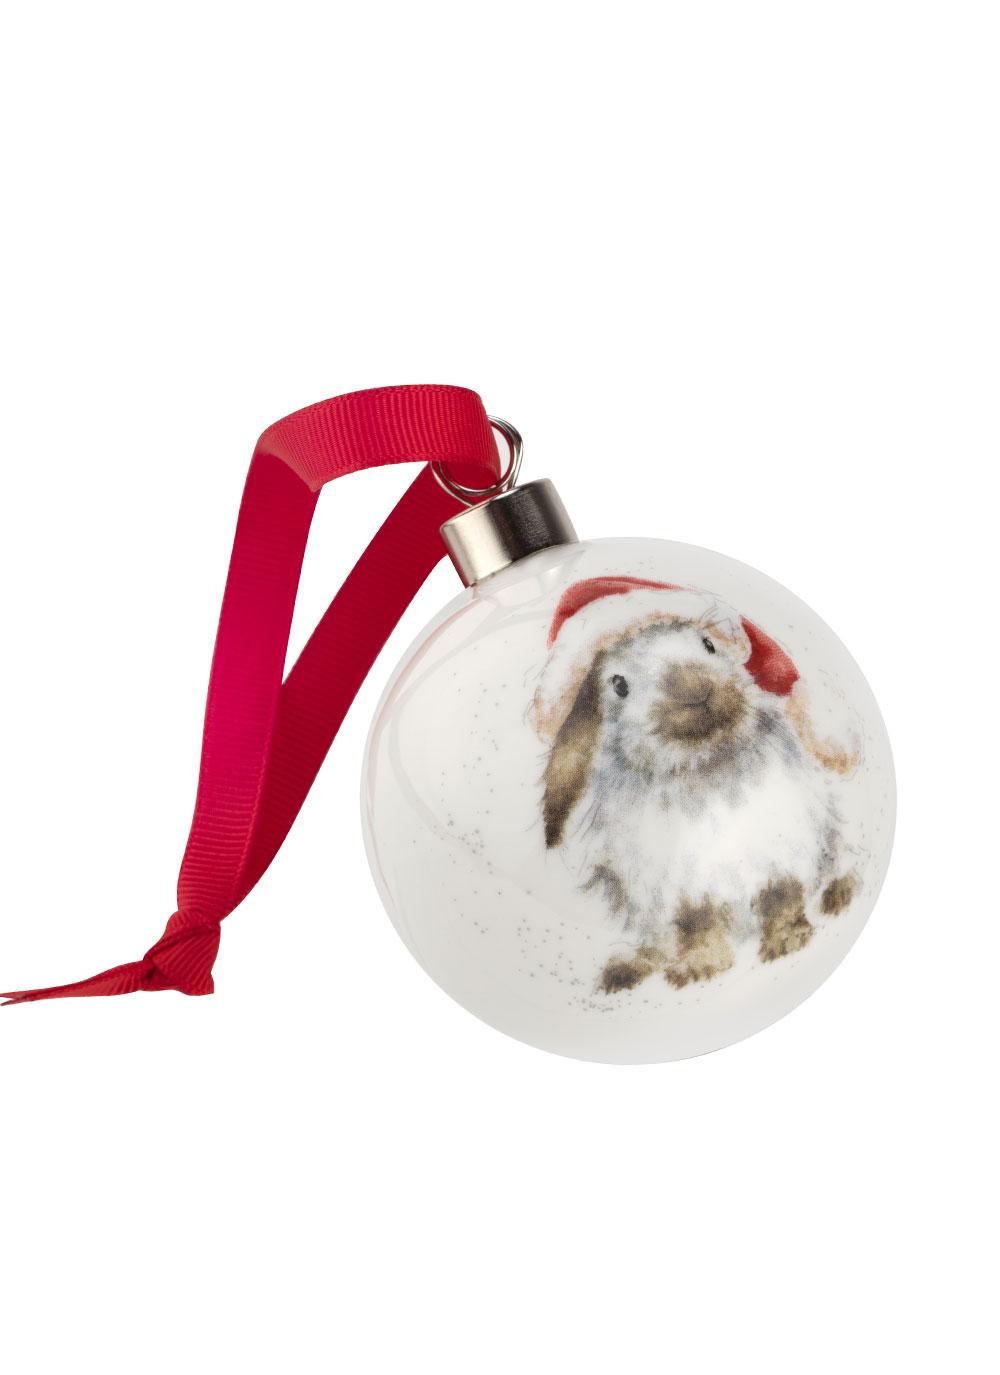 Wrendale Designs Ho Ho Ho Rabbit Christmas Bauble | Blarney